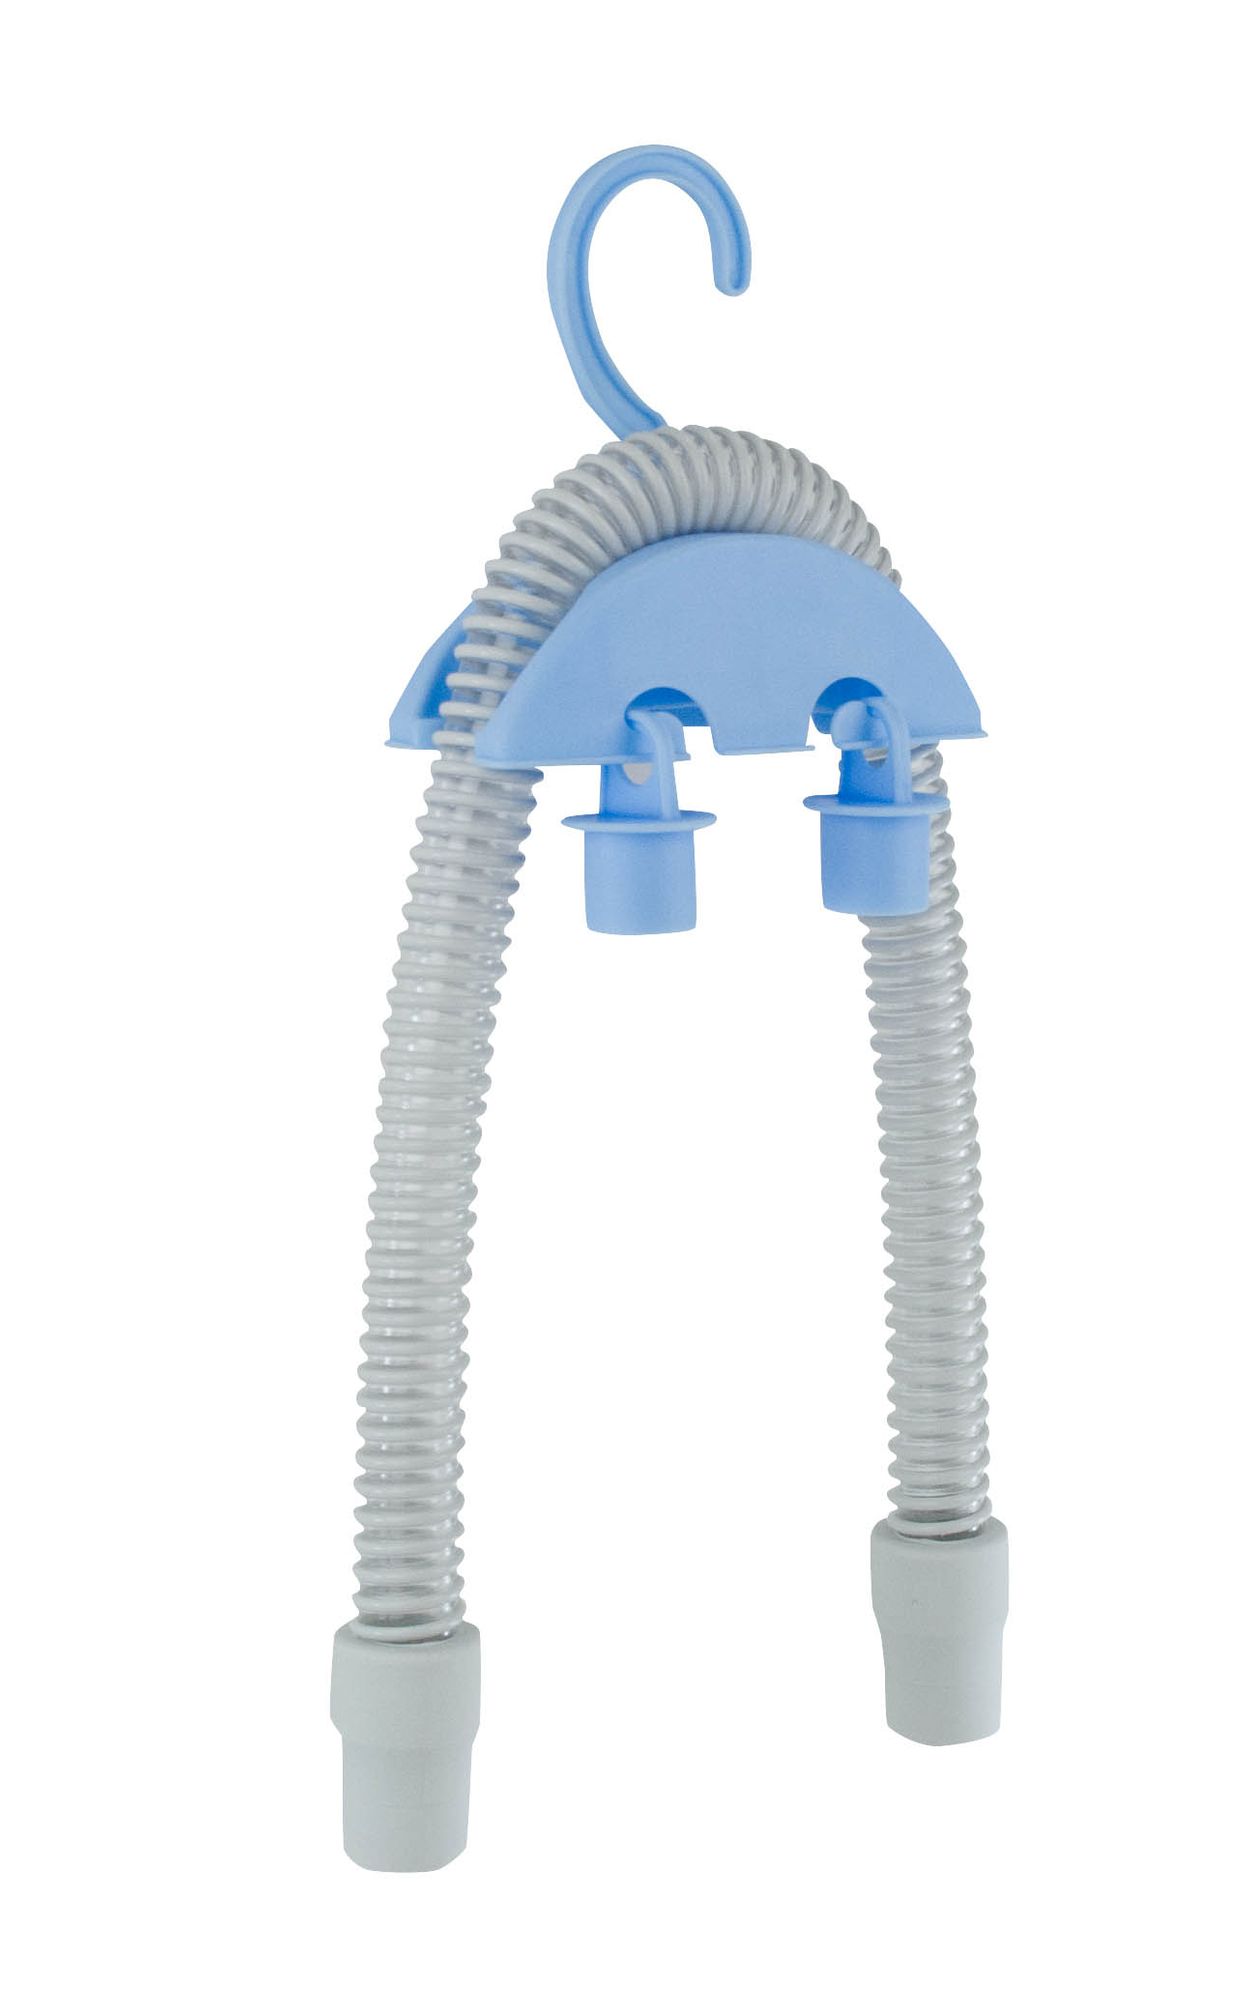 Set zum Reinigen von CPAP Zubehör - bestehend aus Reinigungsmittel, Reinigungsbürste und Reinigungssystem.